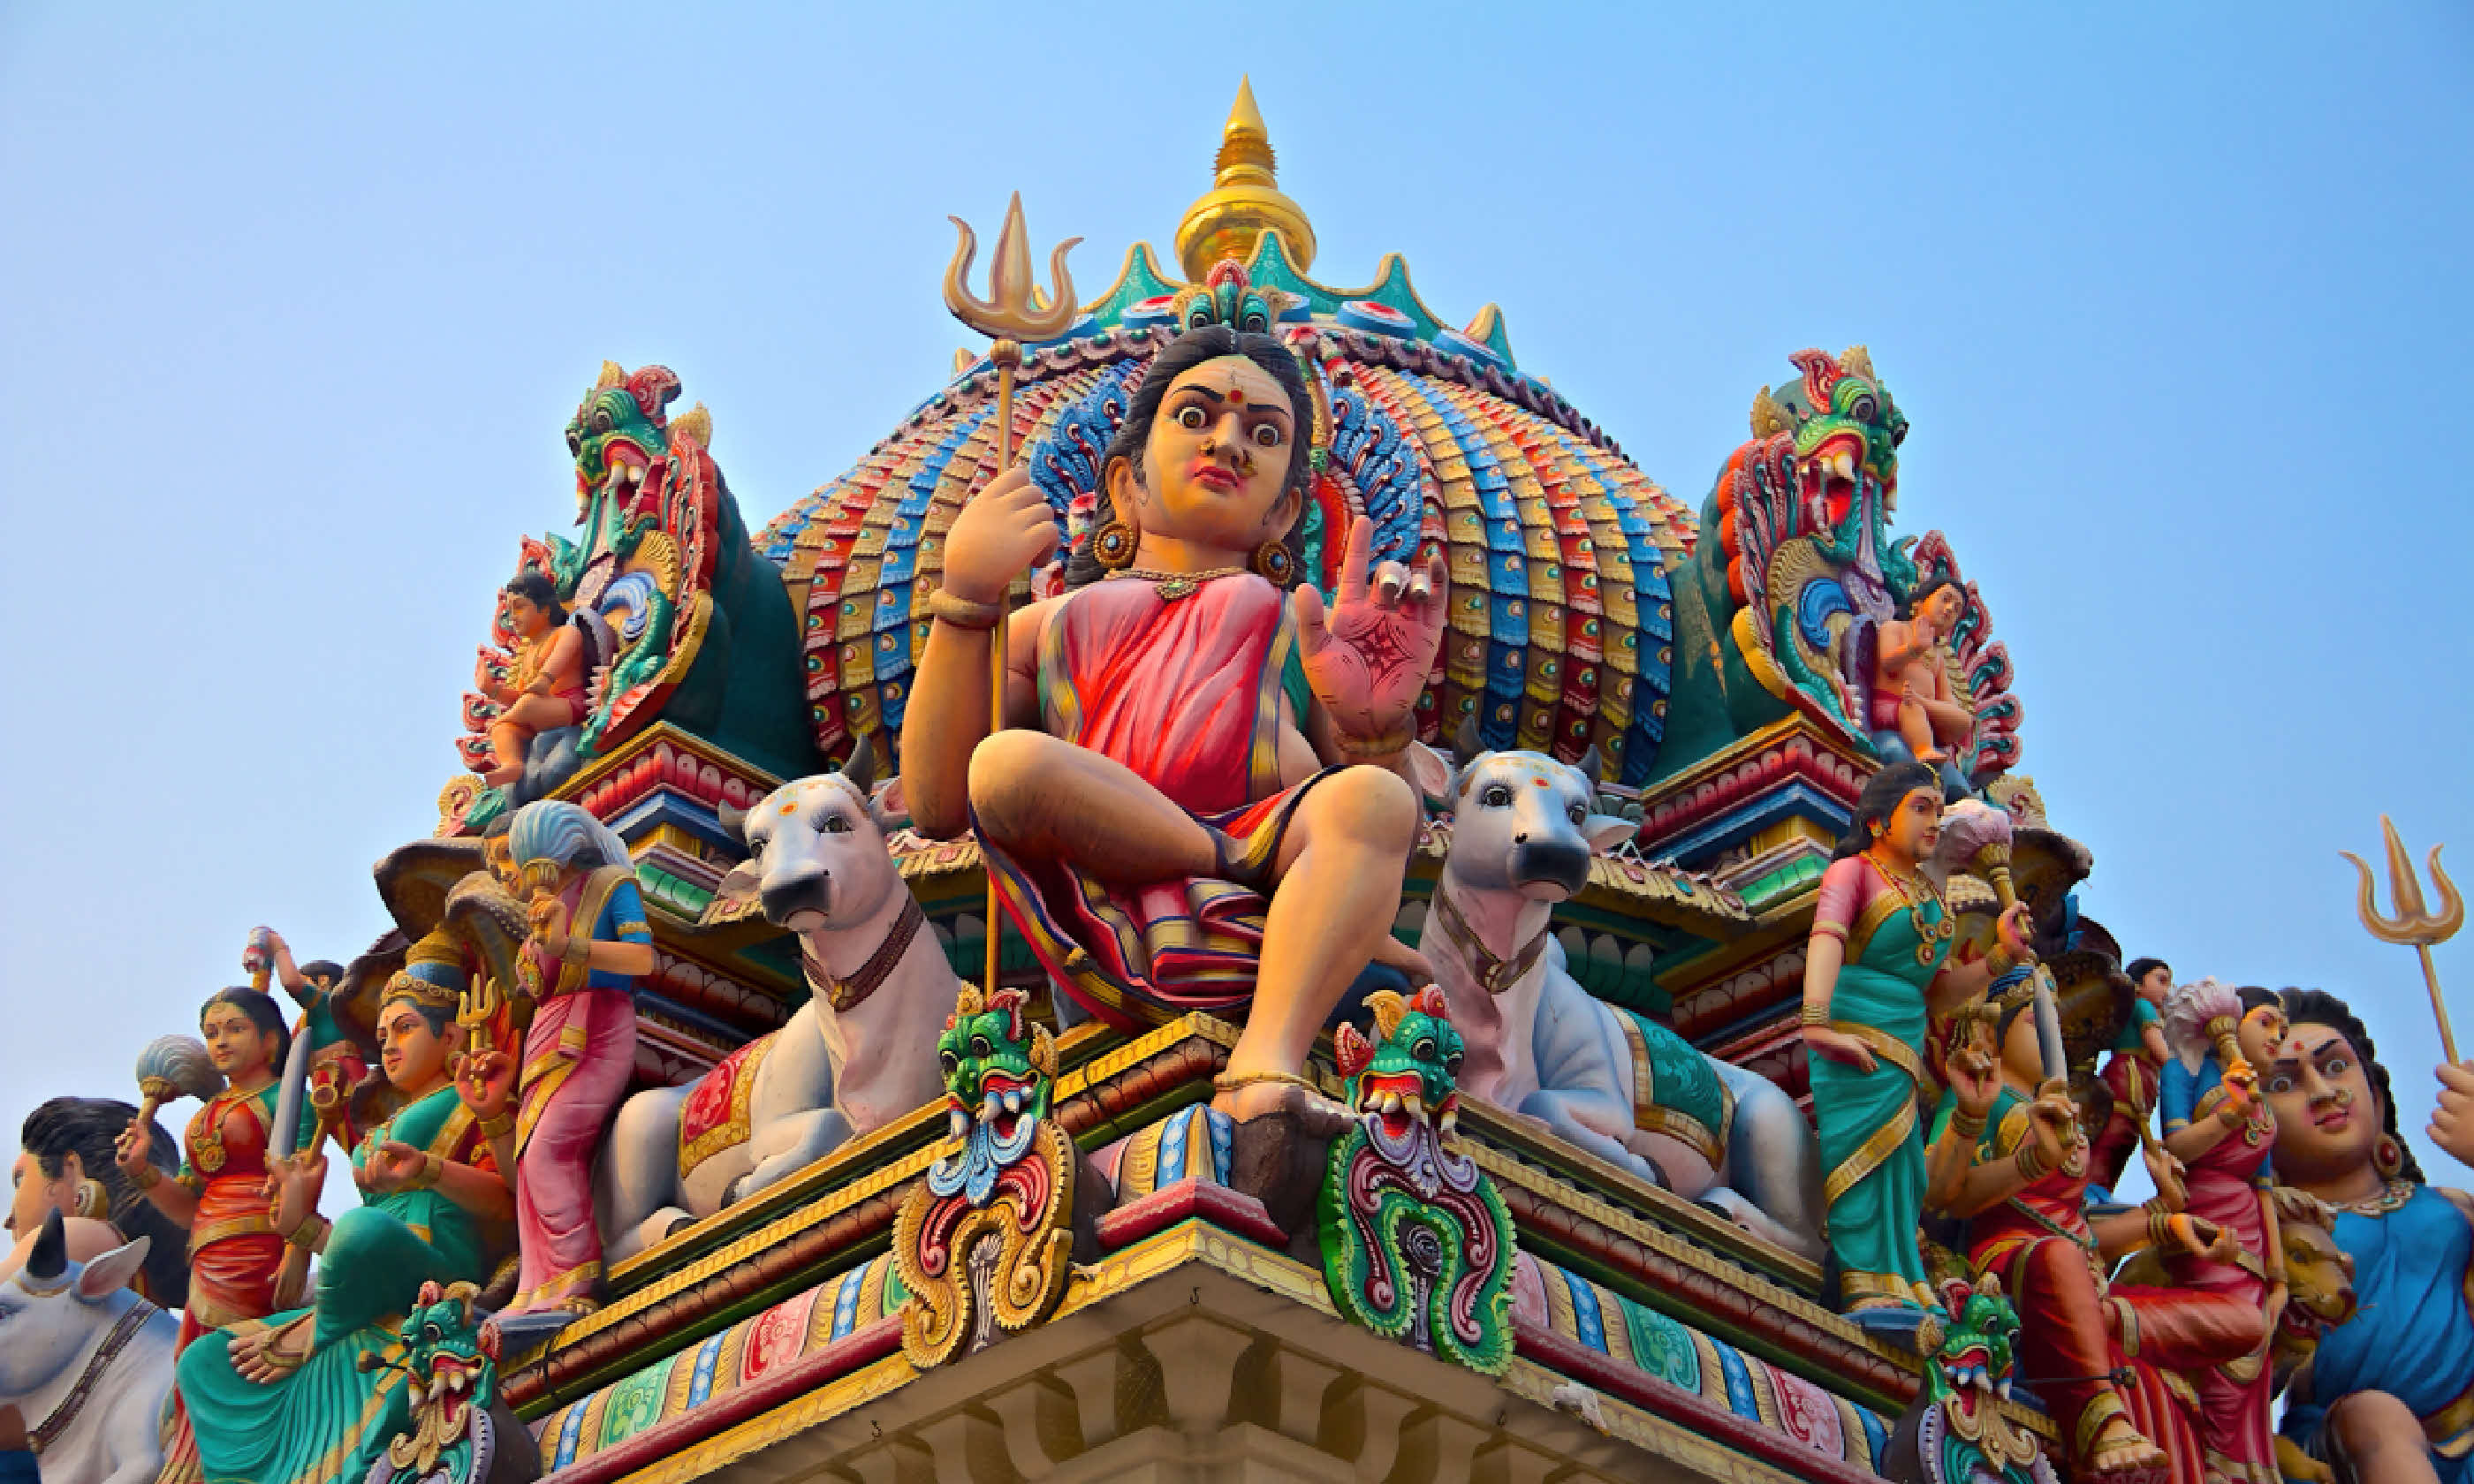 Sri Mariamman hindu temple in Singapore (Shutterstock)